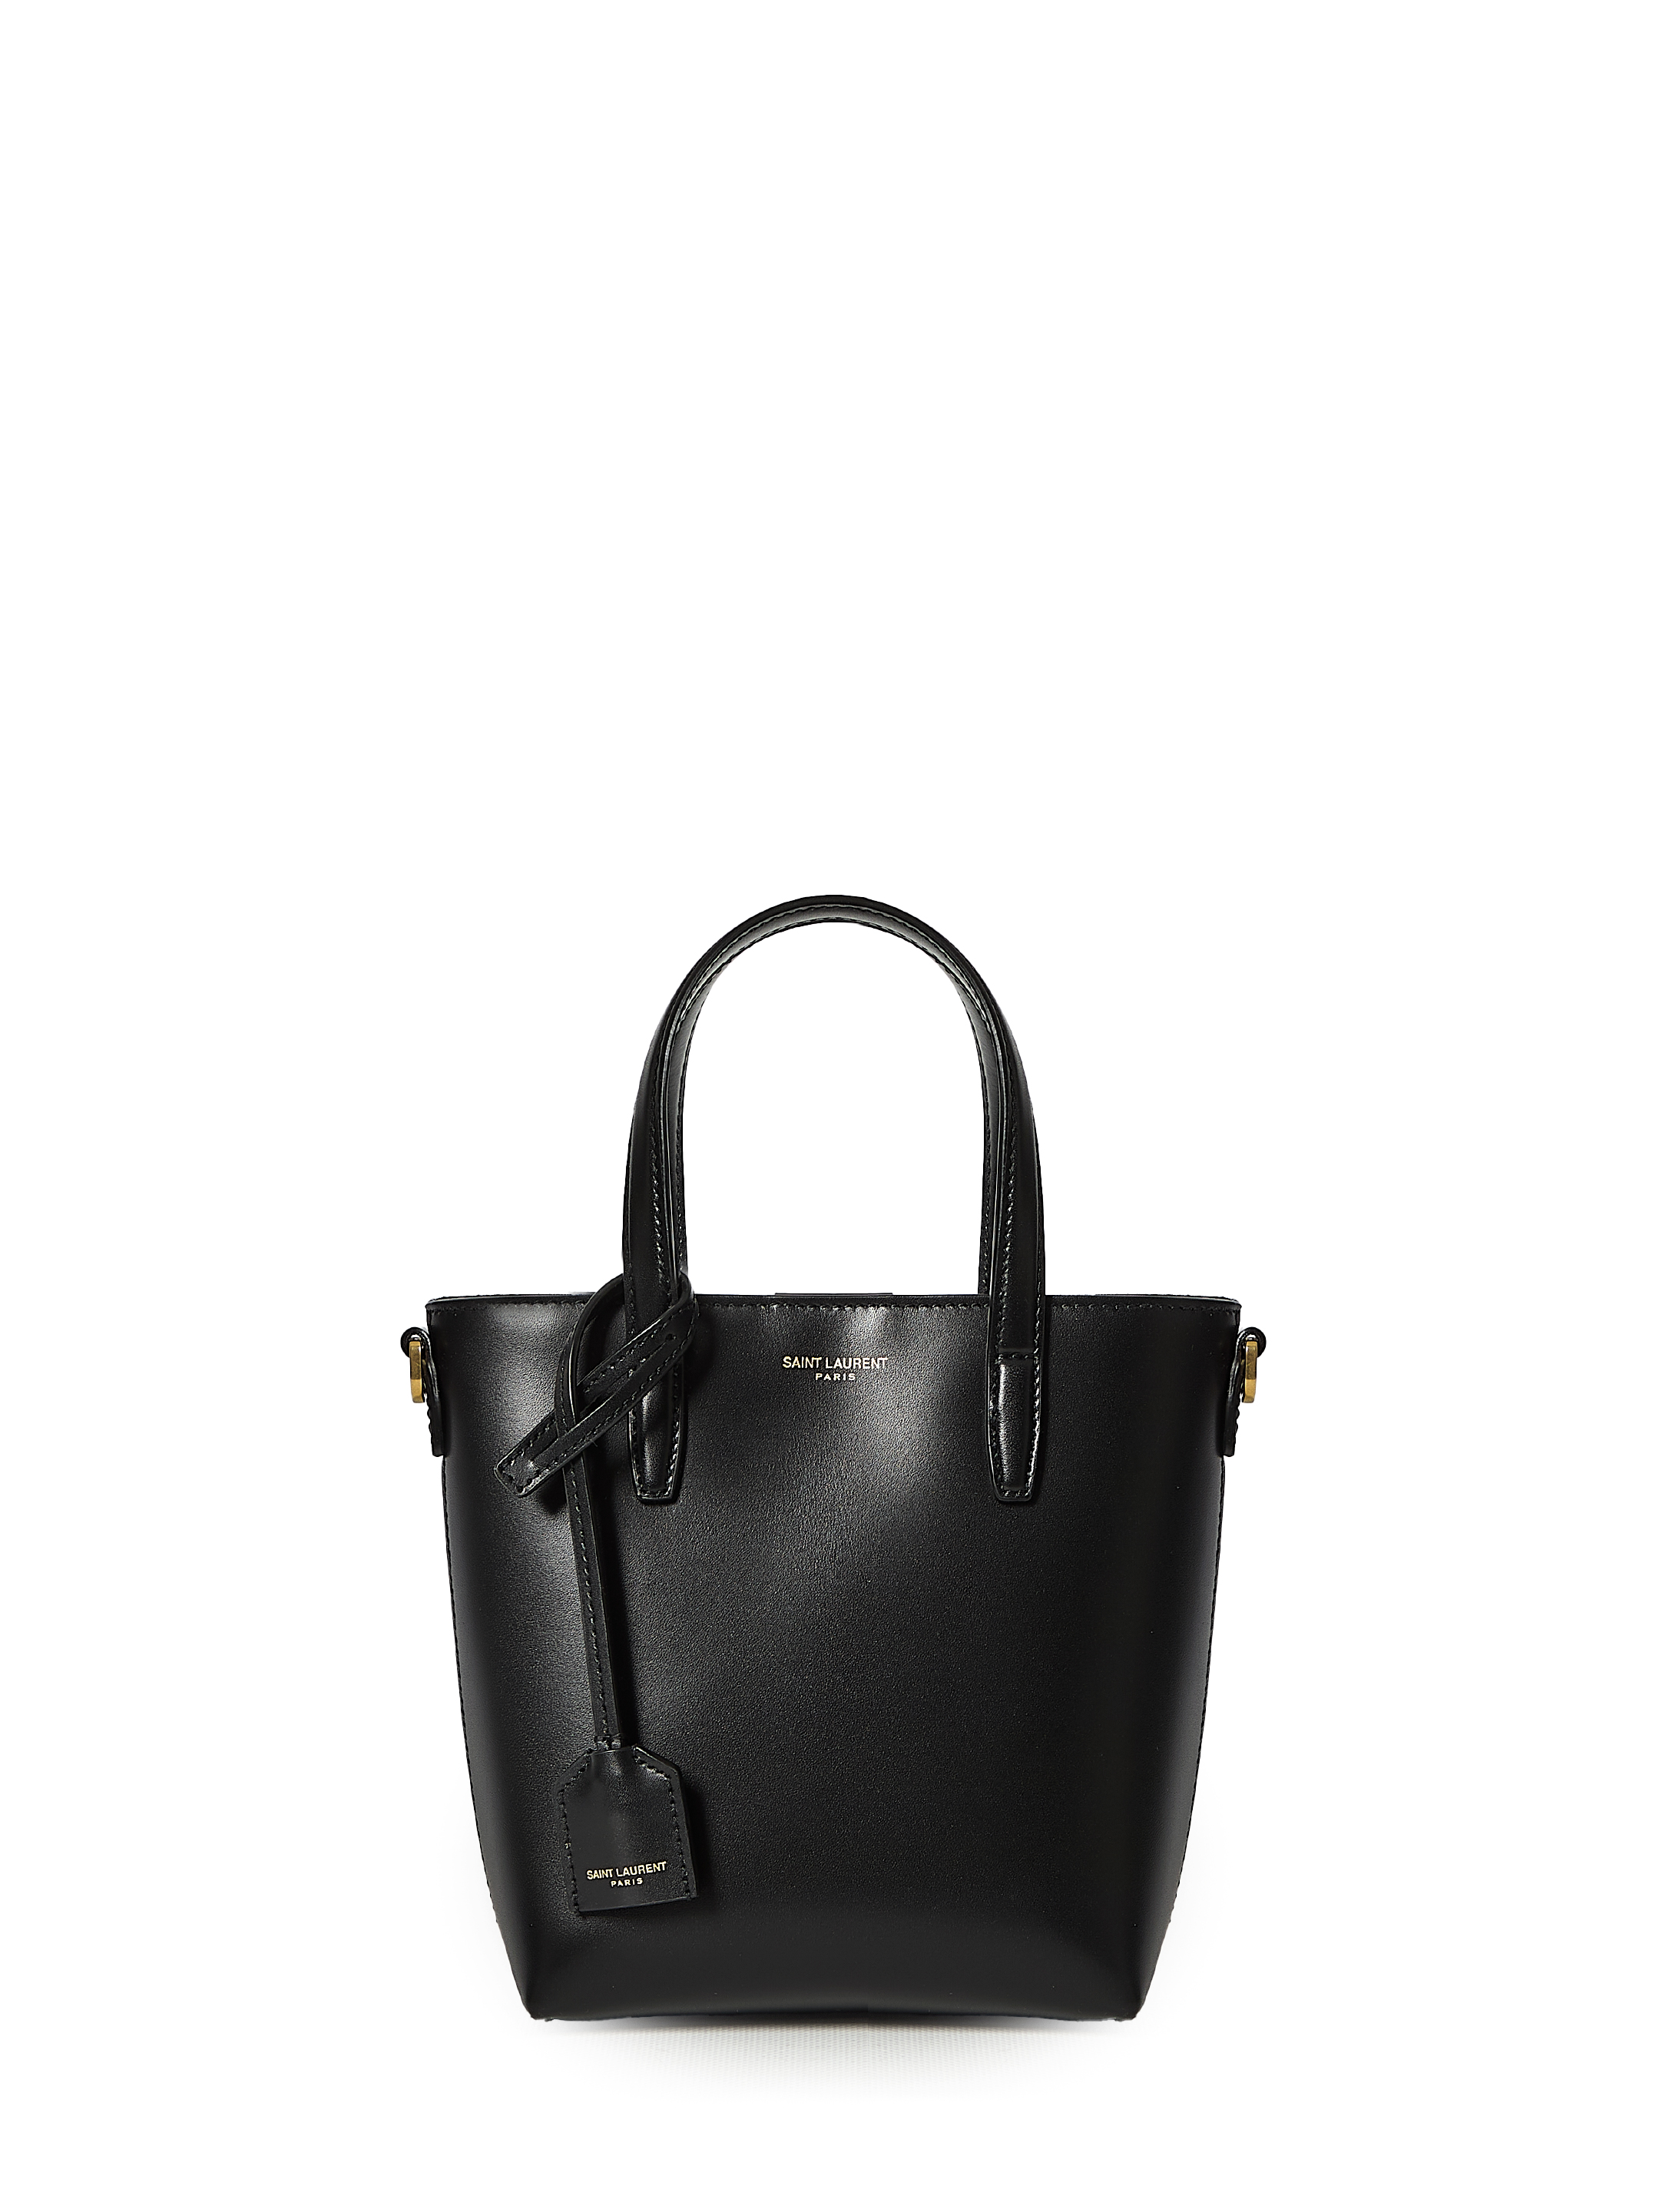 Сумка-шоппер Saint Laurent Saint Laurent Mini, черный сумка saint laurent leather wallet черный